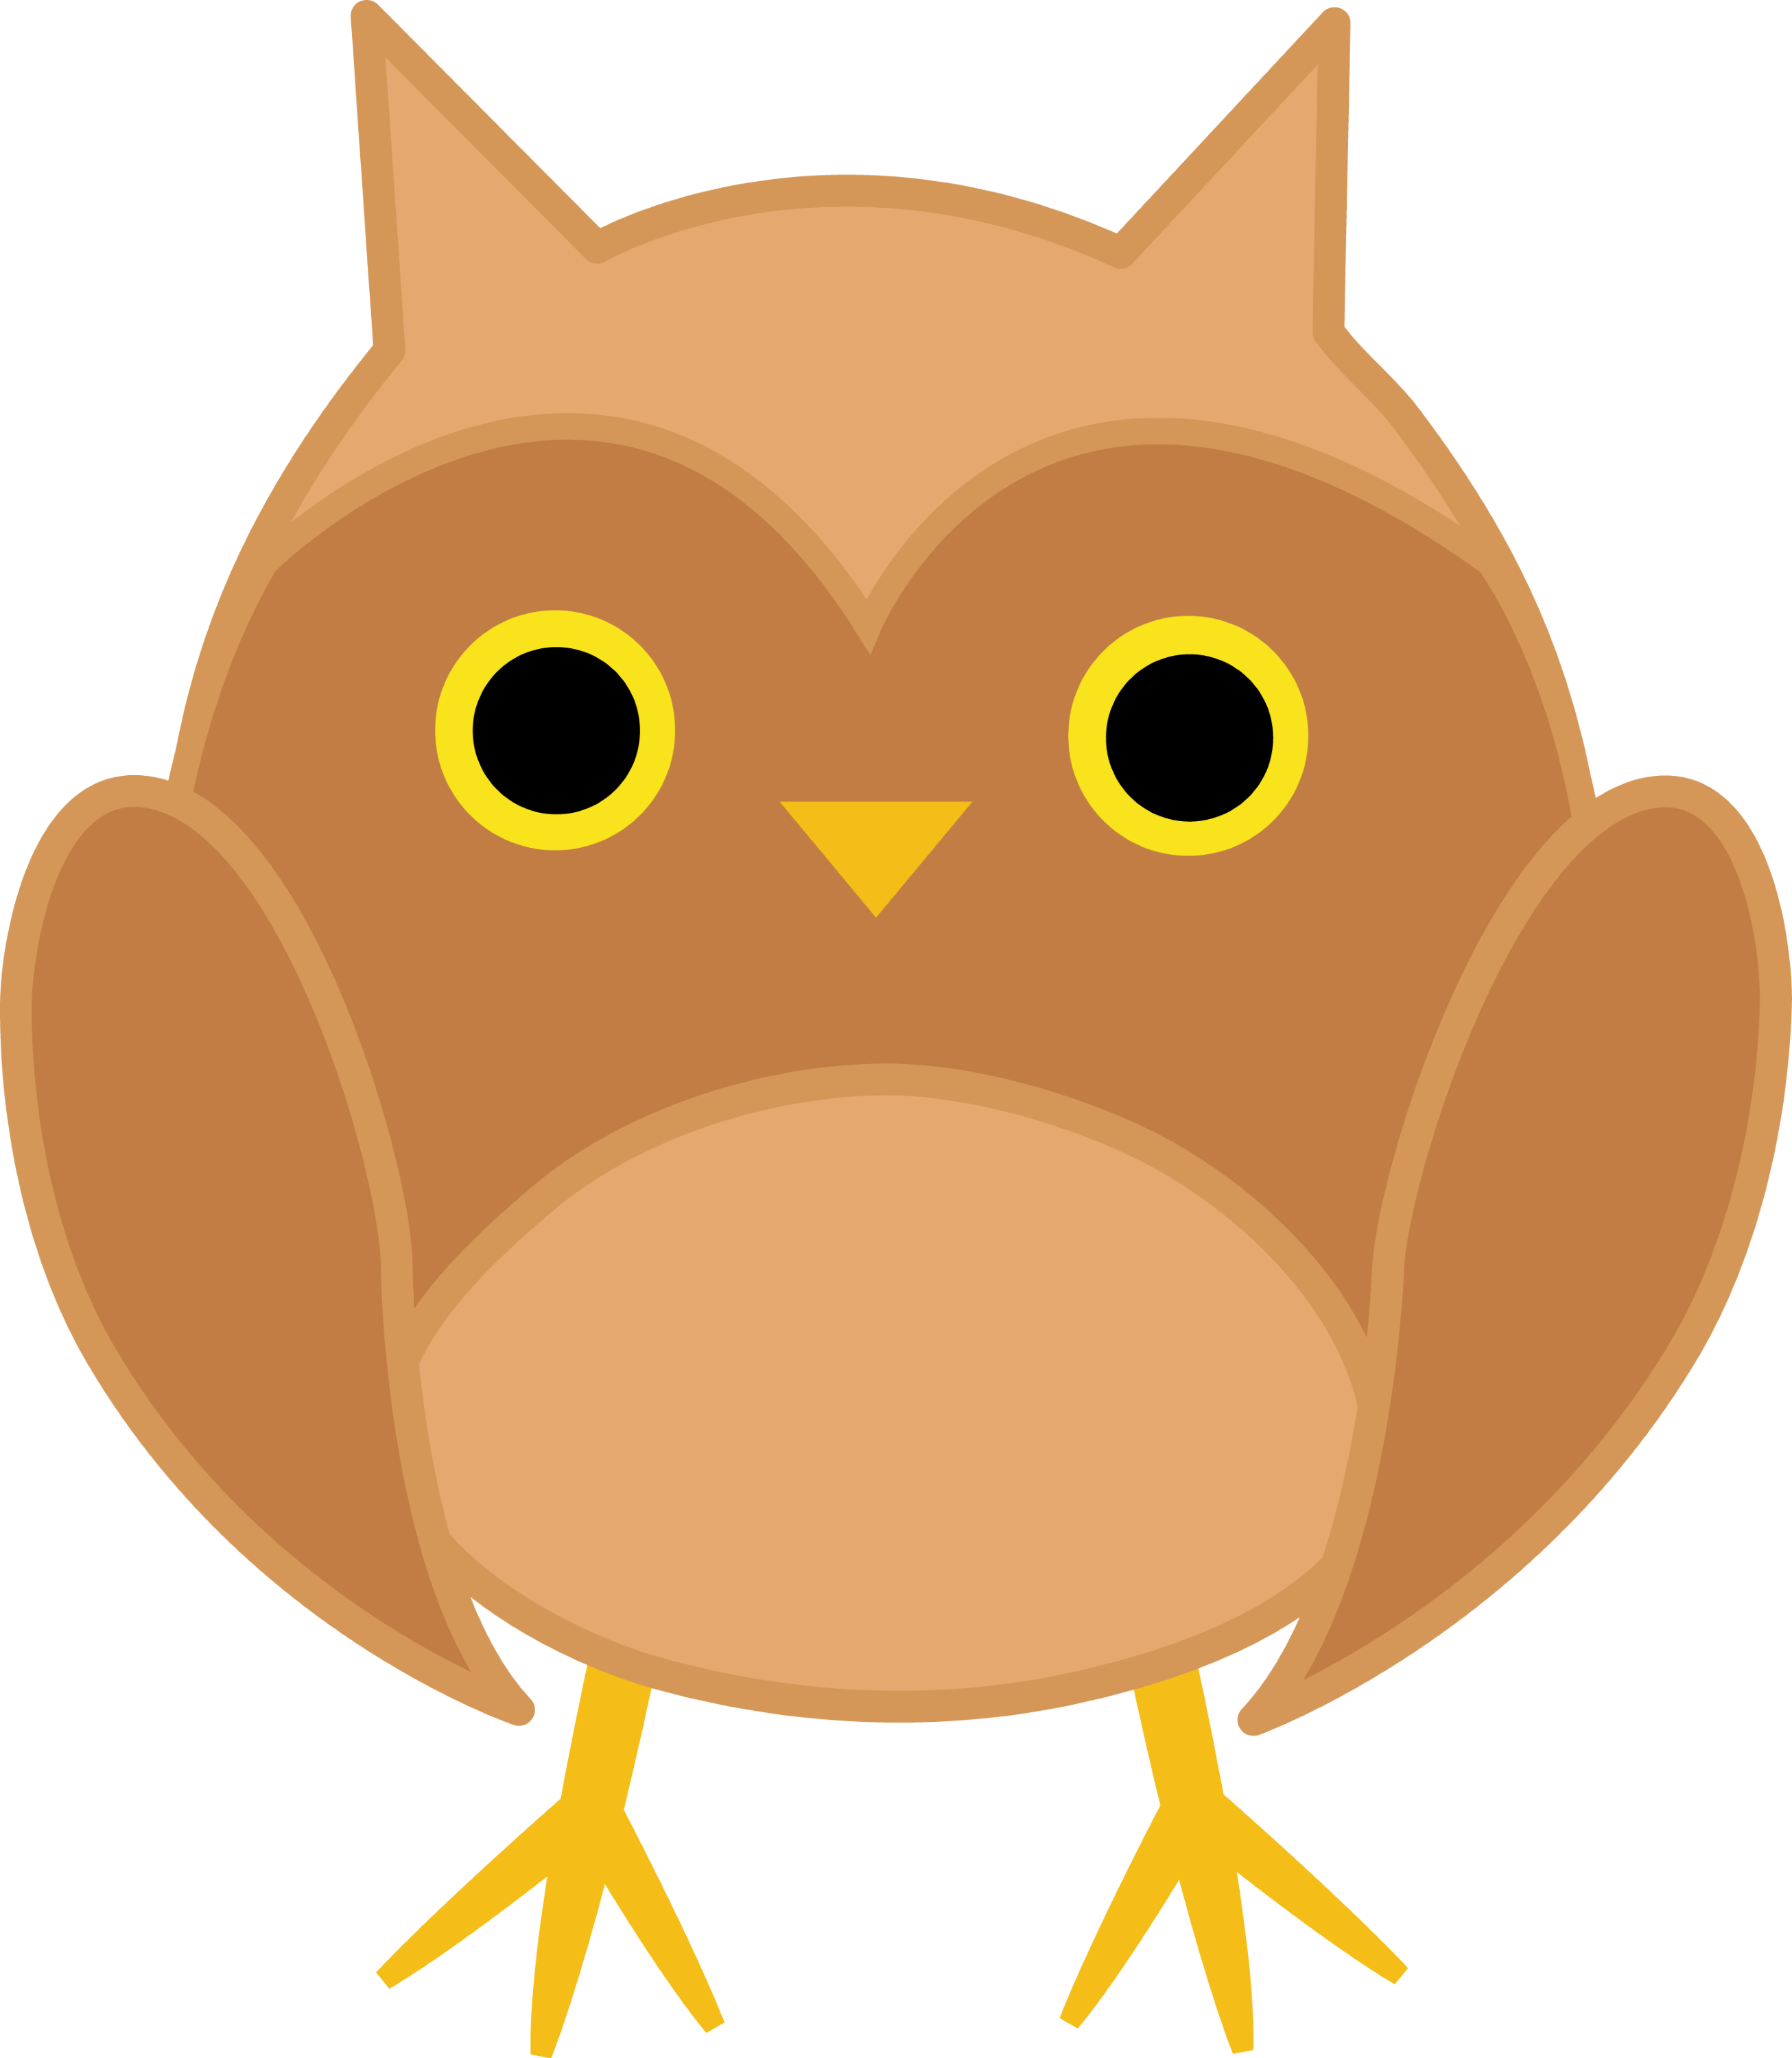 Cute Brown Owl - Free Clip Art